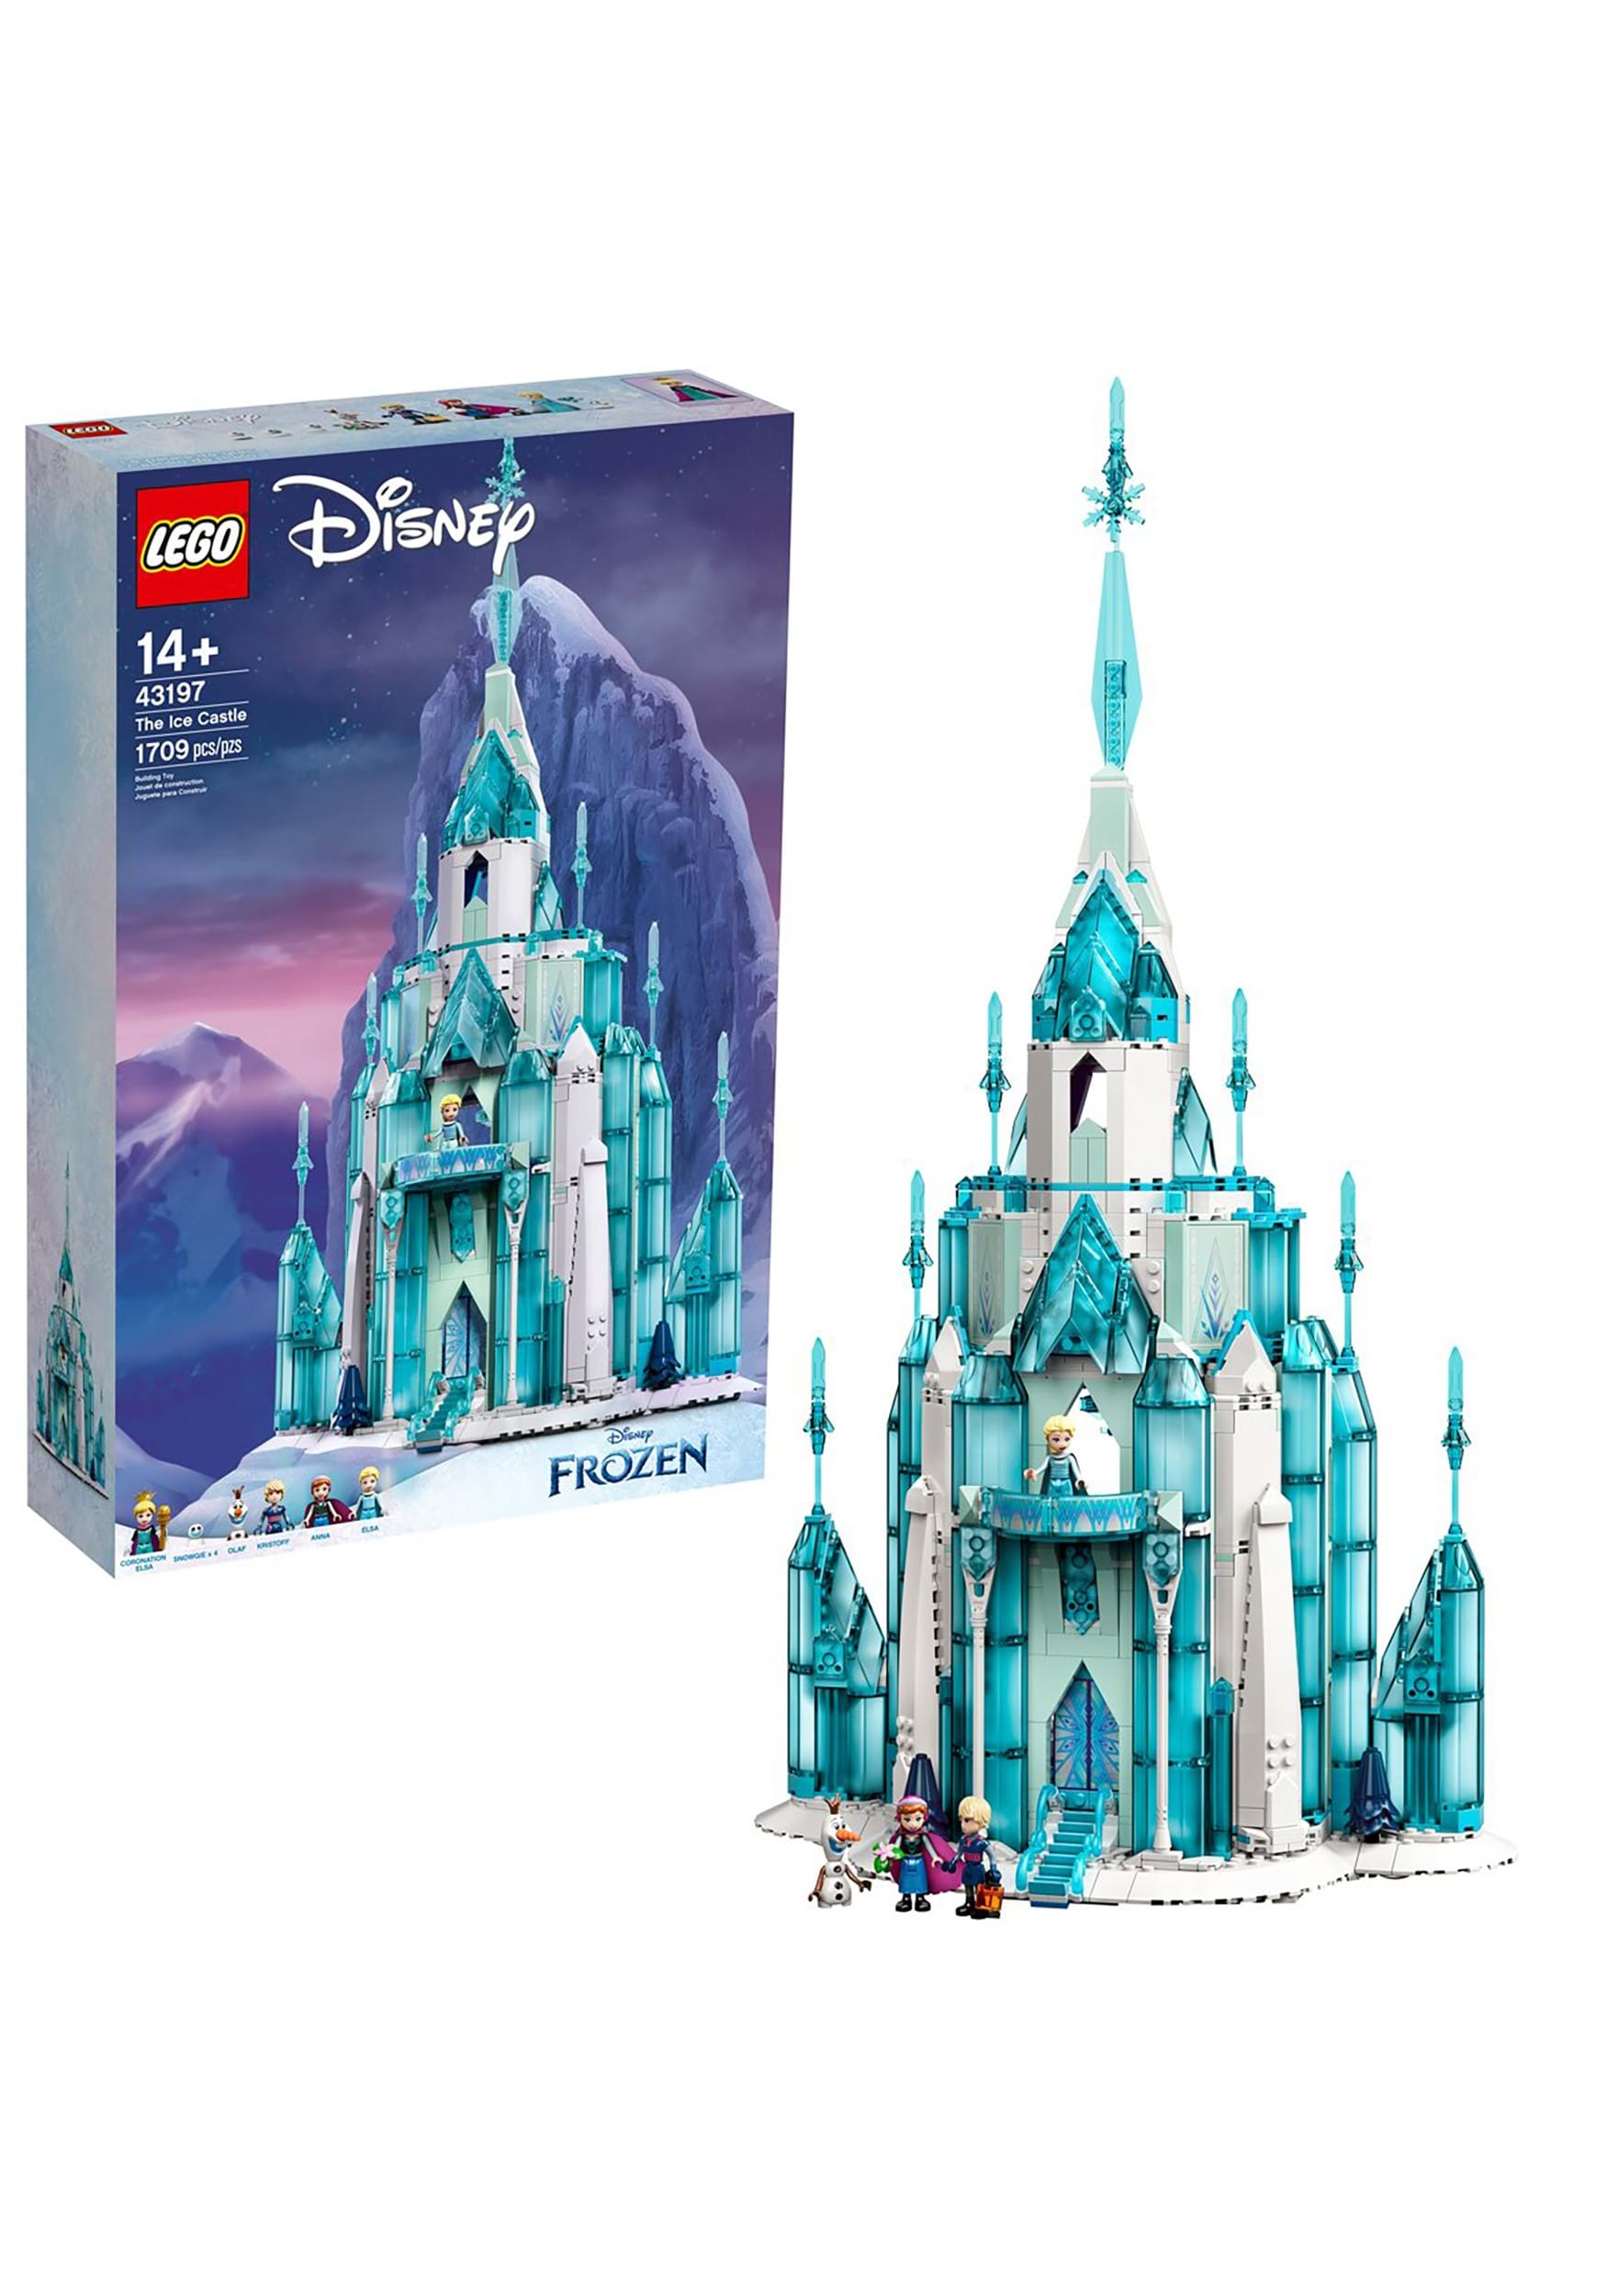 LEGO Disney Frozen Ice Castle Building Set